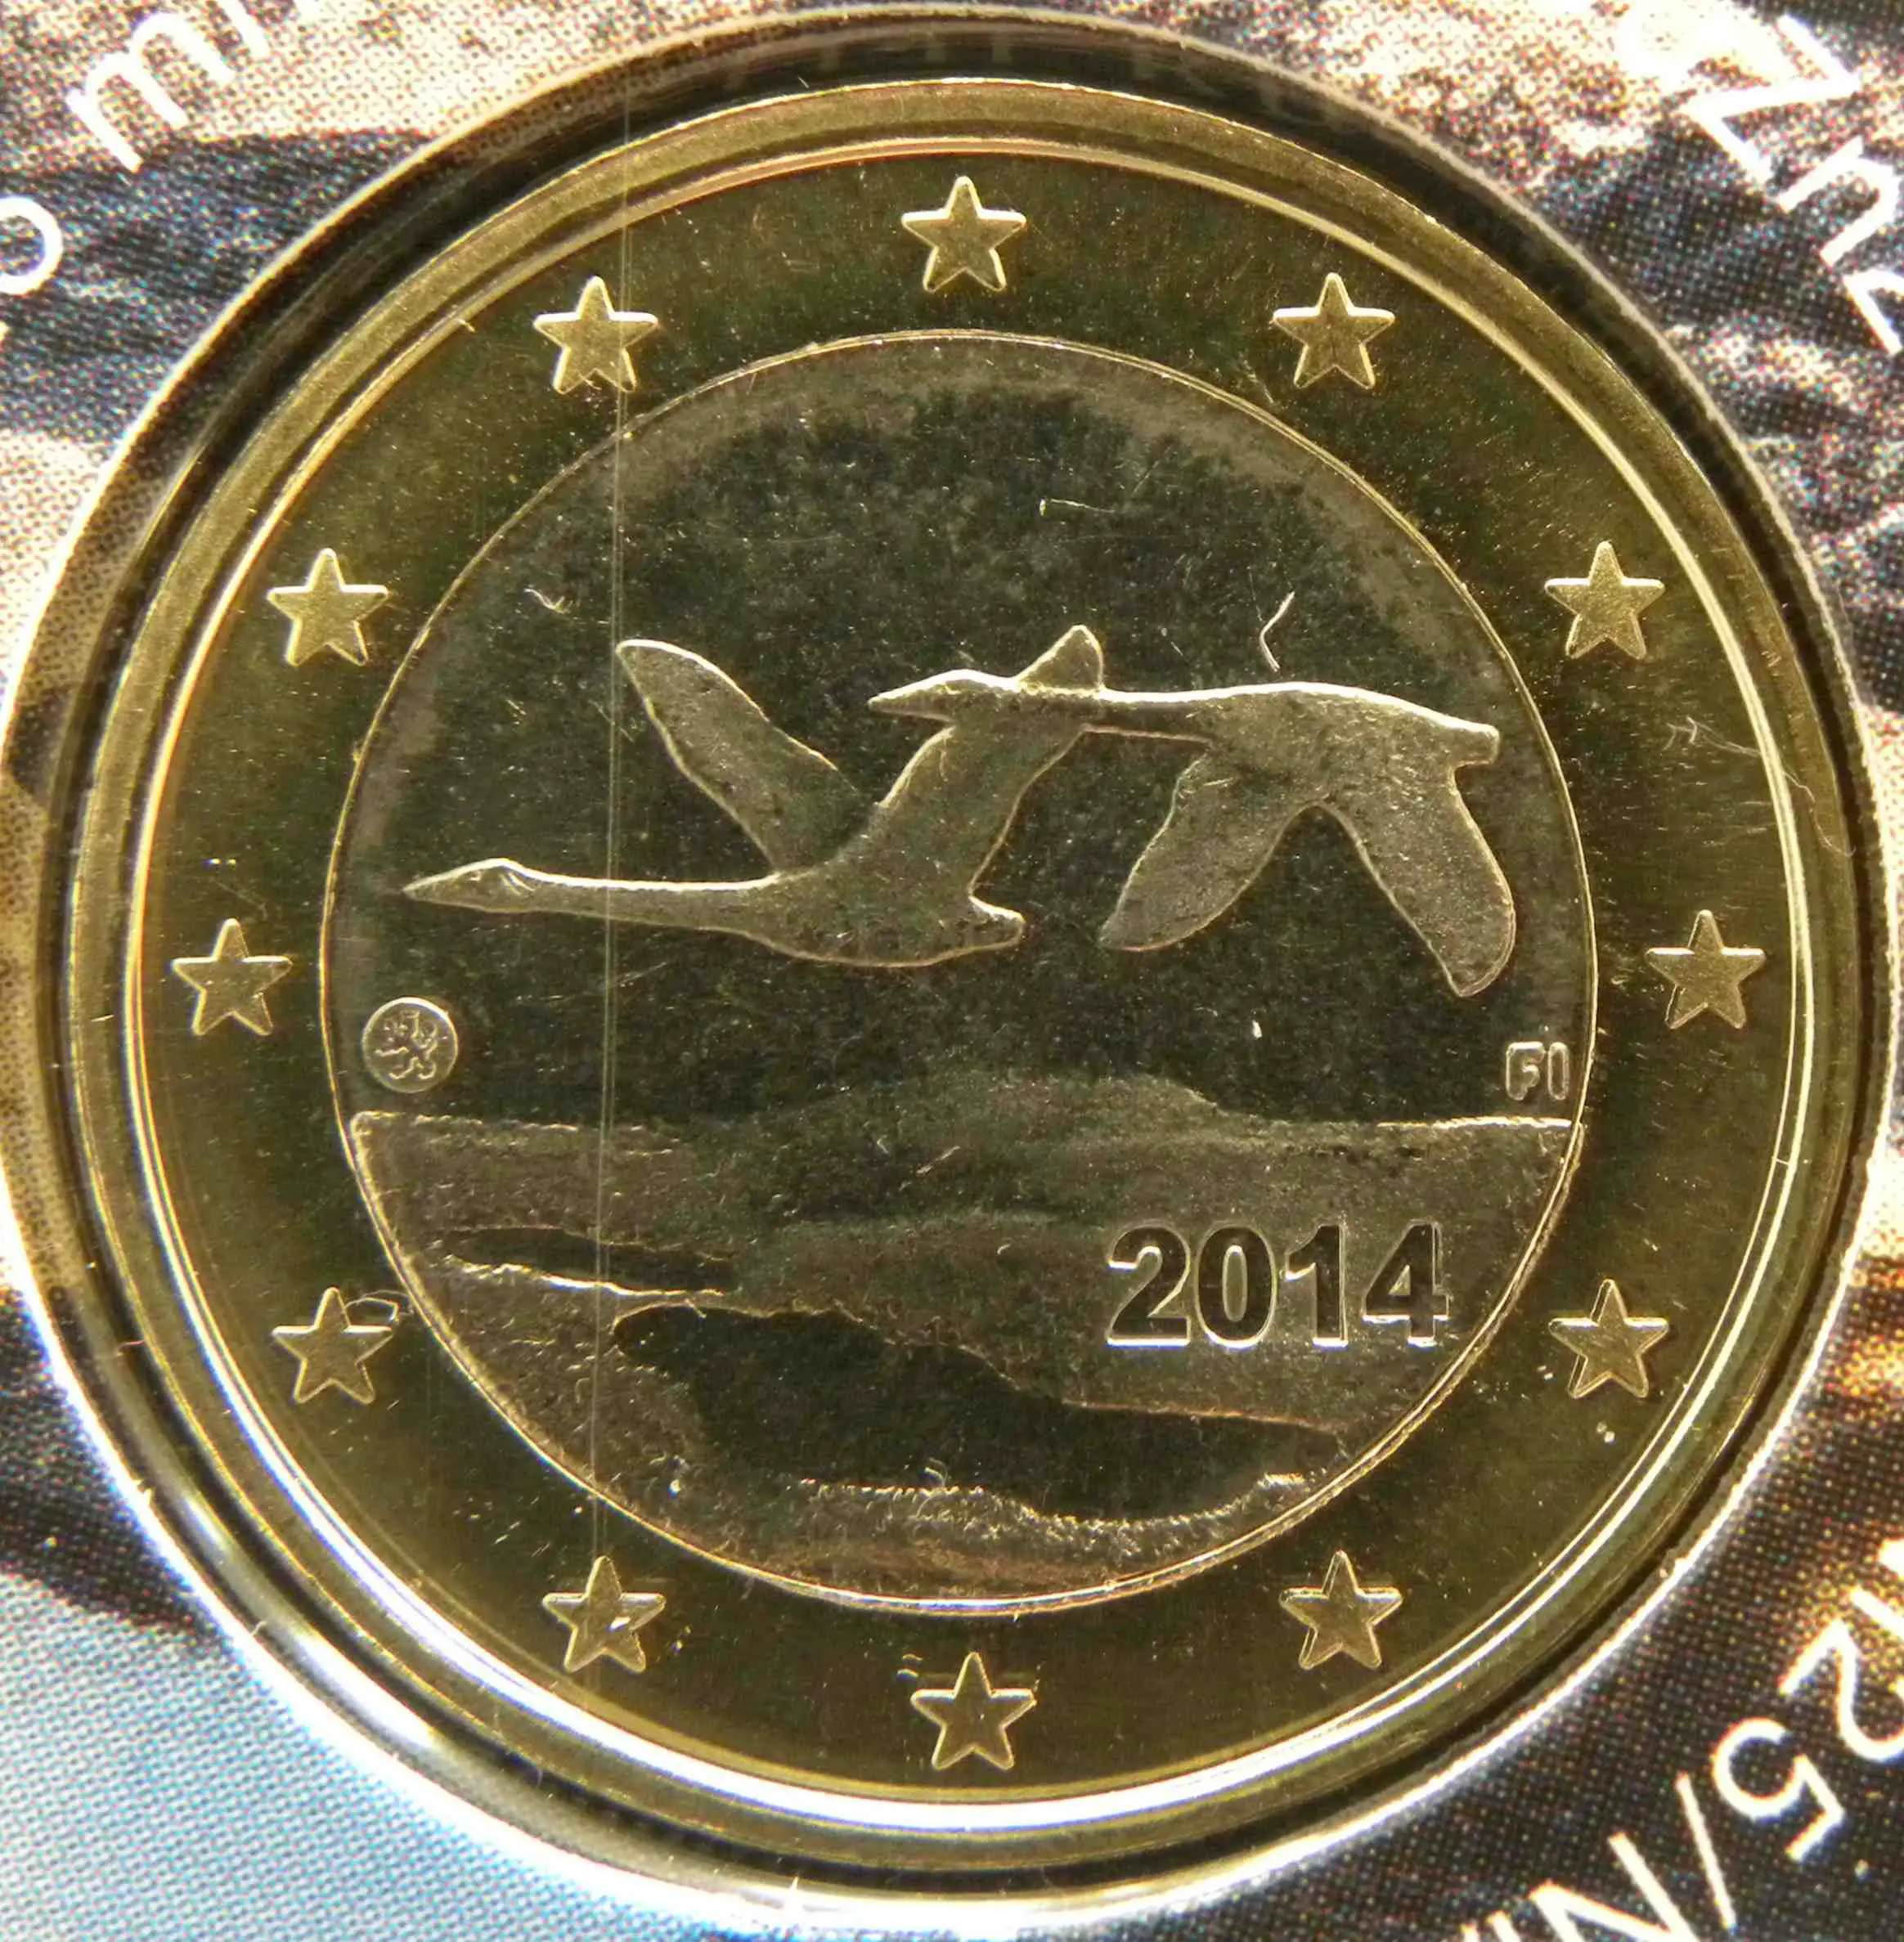 Finnland 1 Euro Münze 2014 - euro-muenzen.tv - Der Online Euromünzen